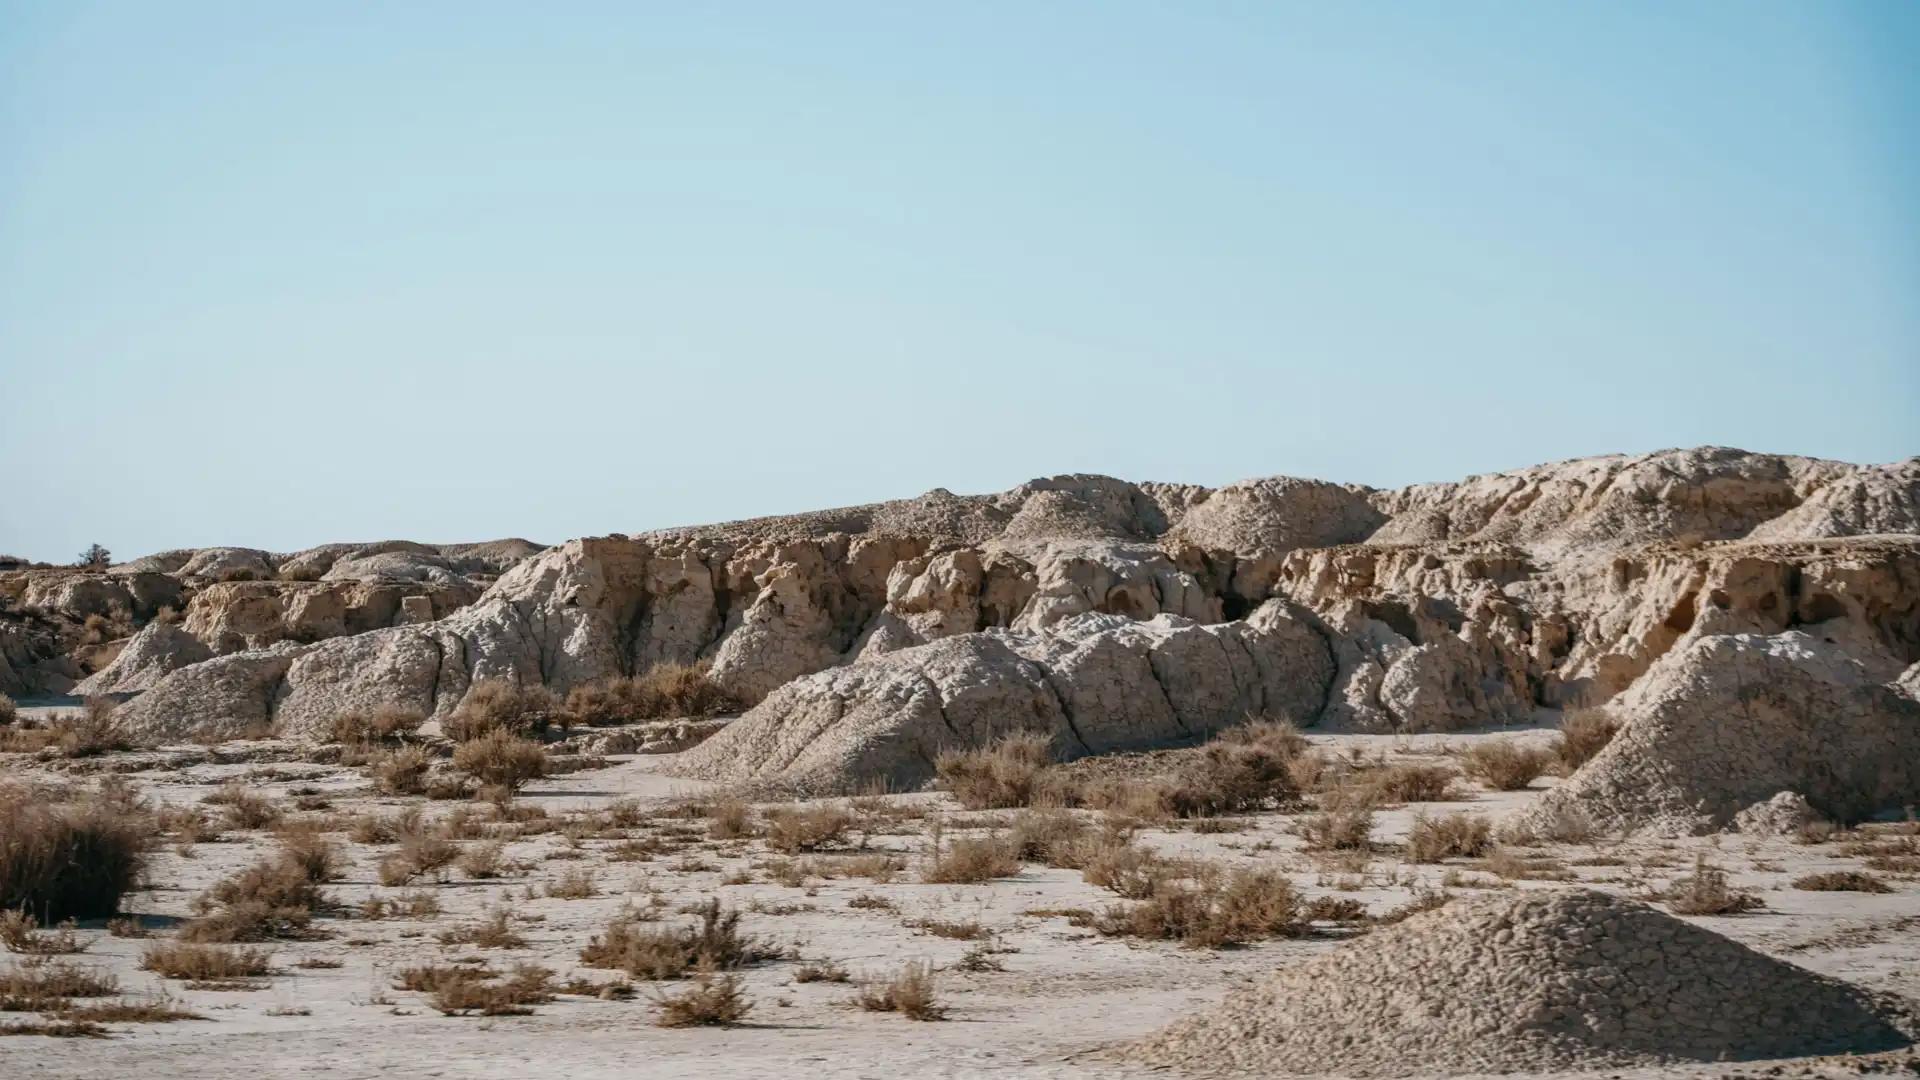 Blanquizales de Pisquerra dans le désert des Bardenas